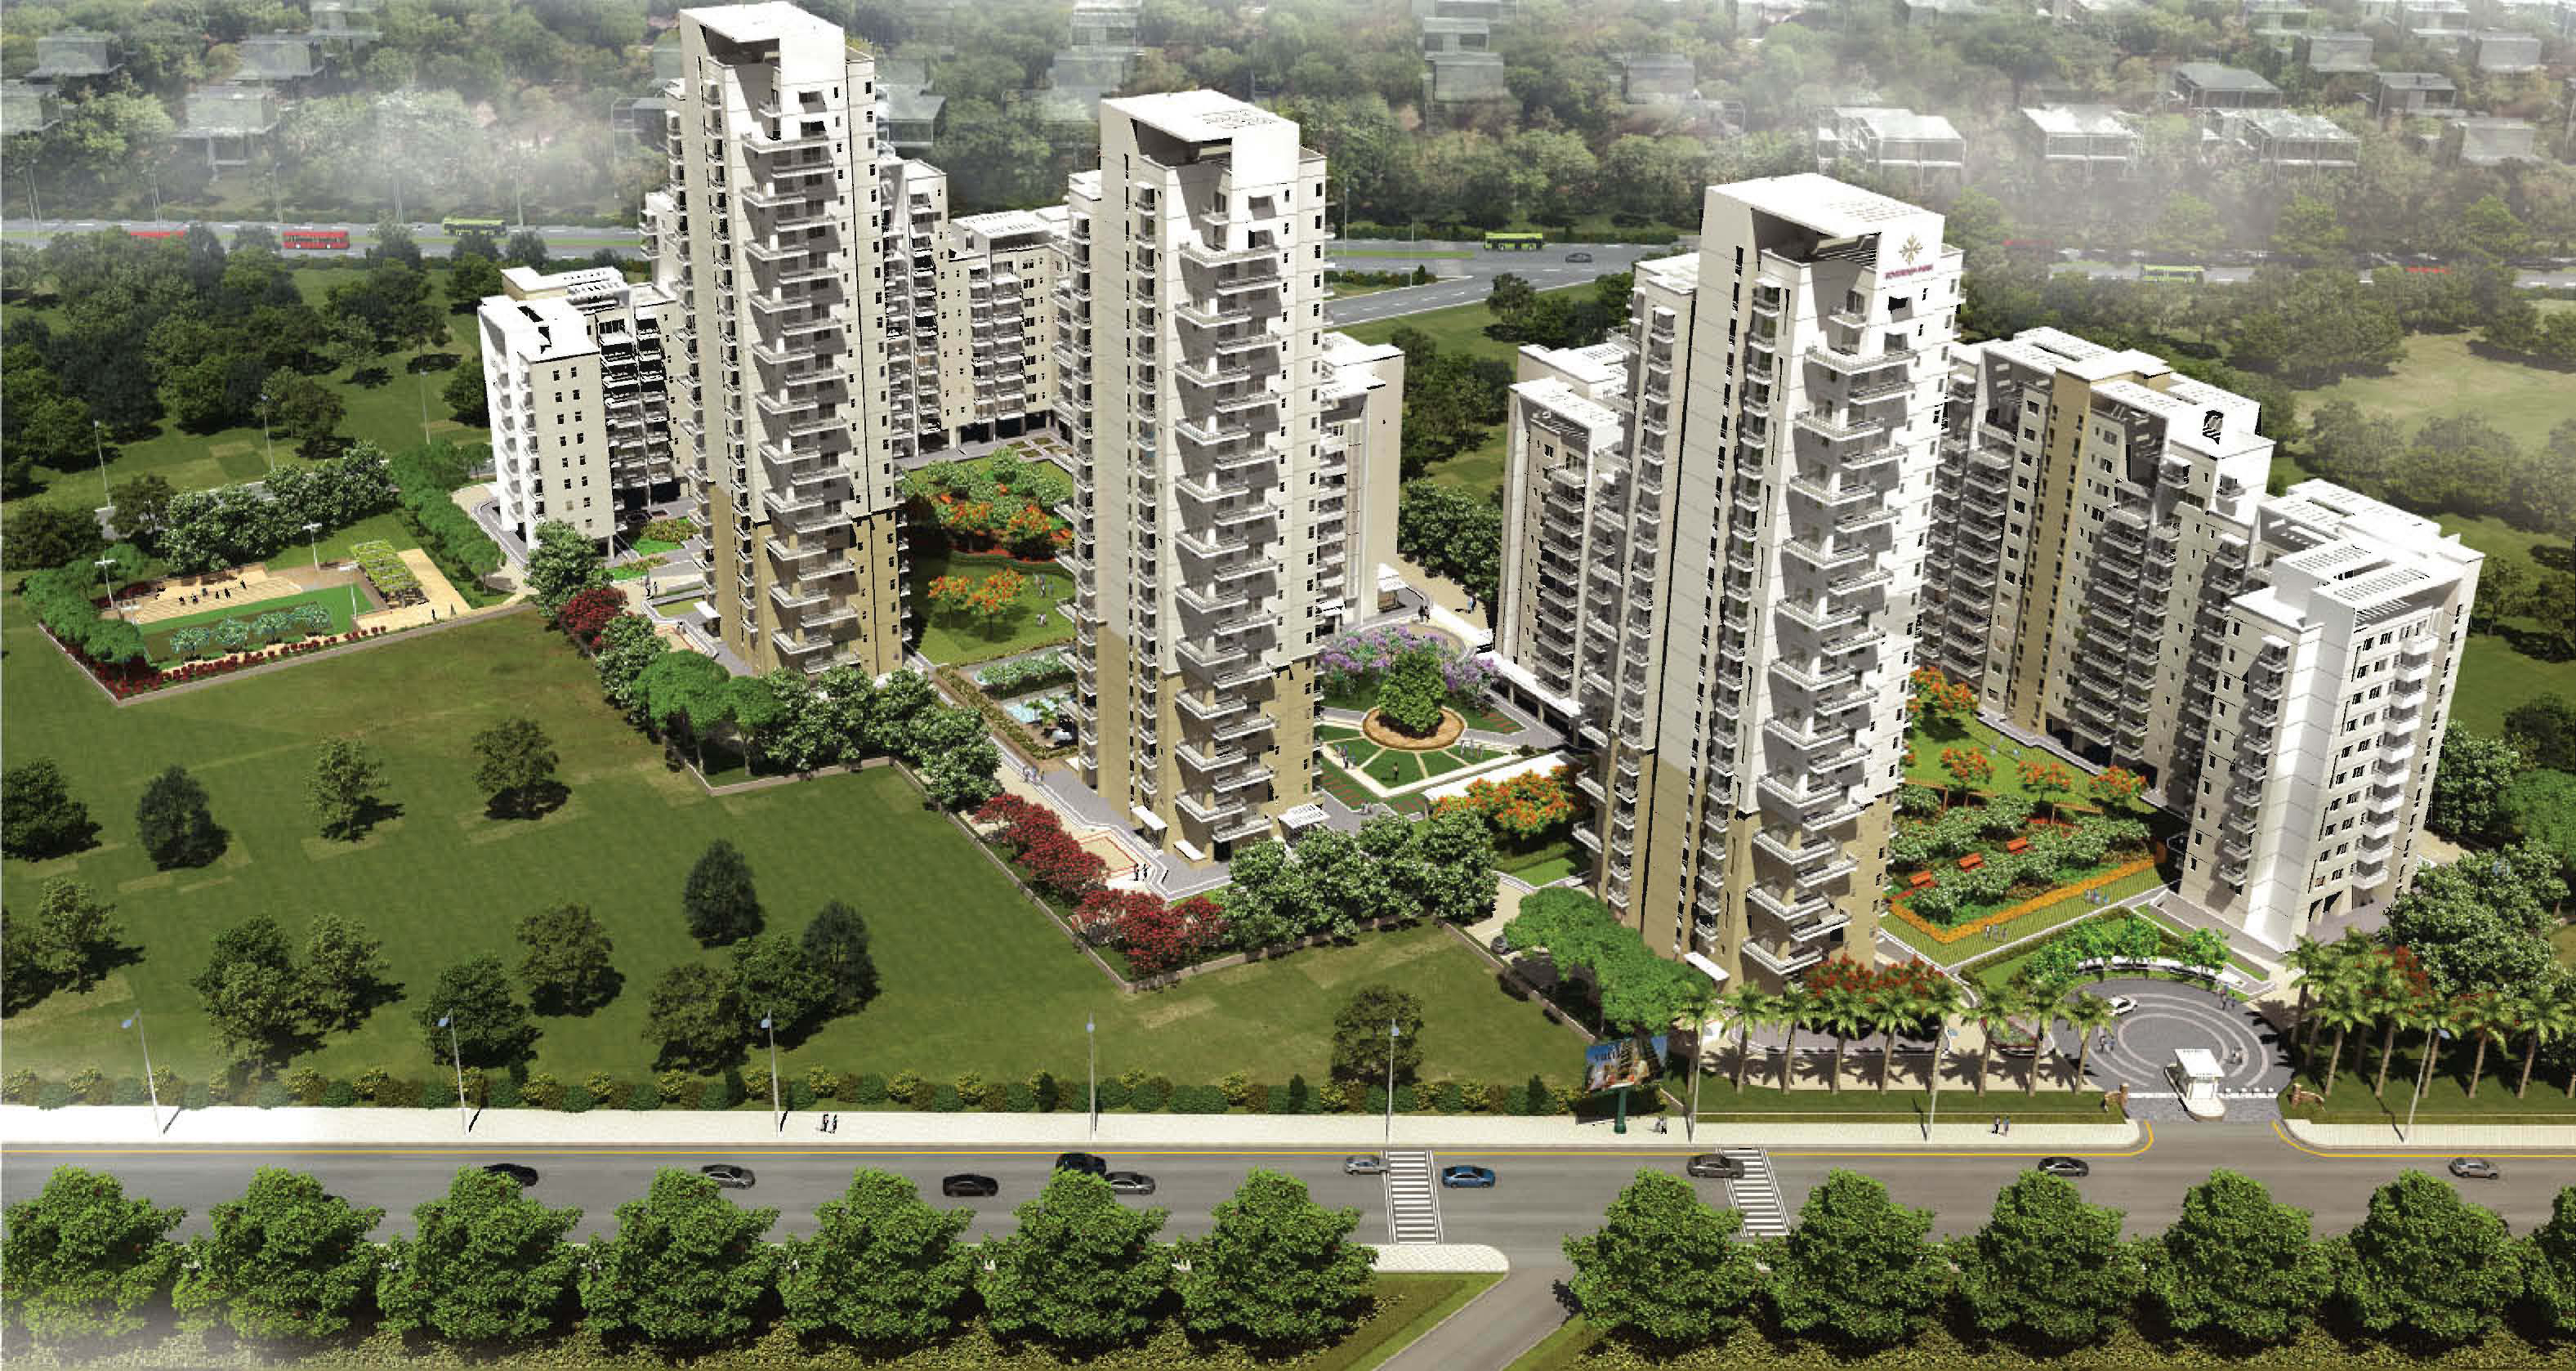 Vatika Sovereign Park, a new residential apartments/flats